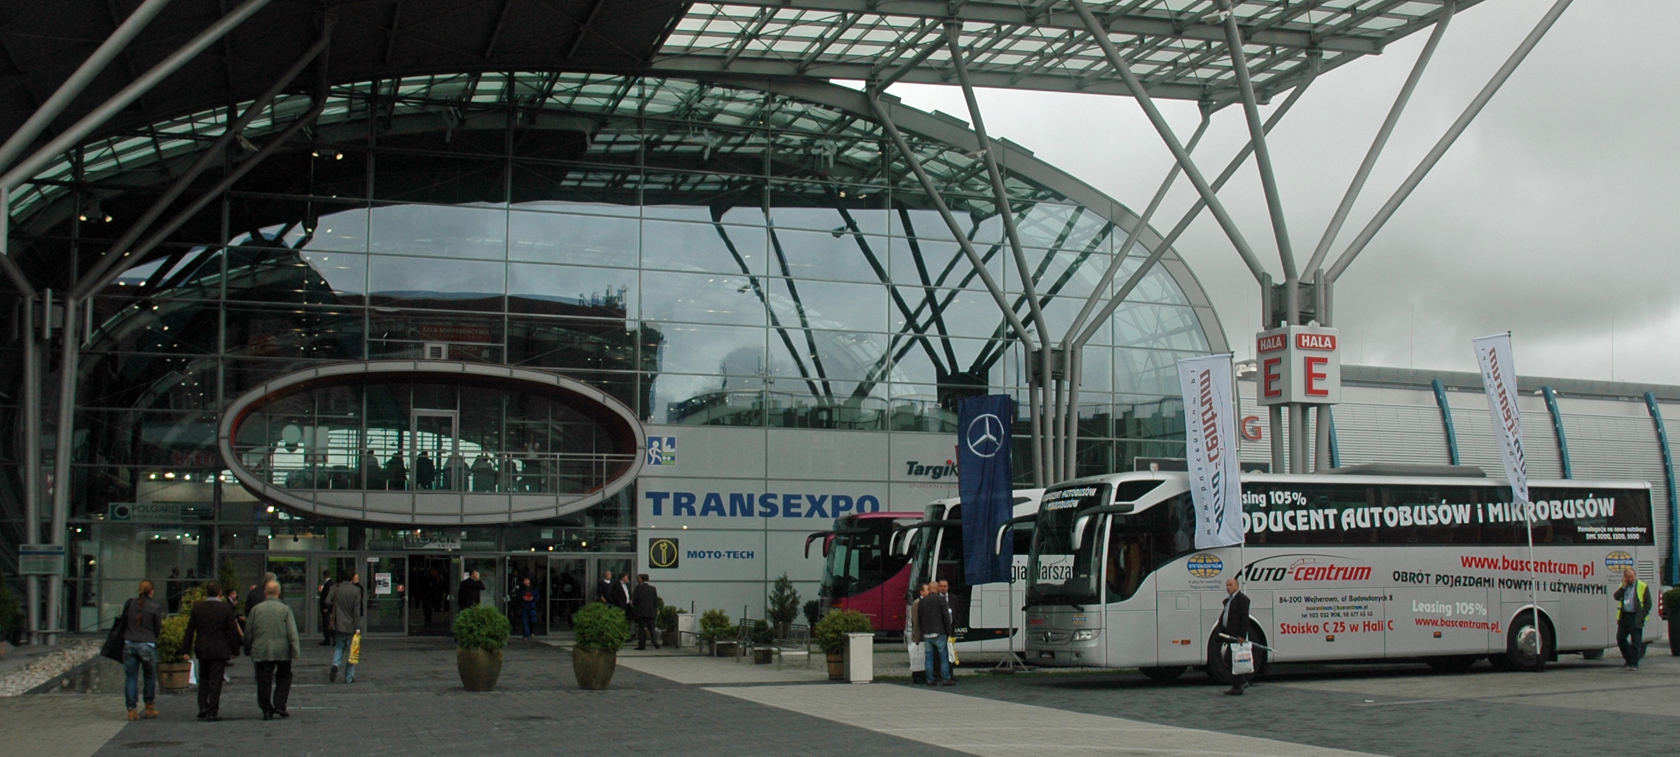 Transexpo 2013 pod znakiem Euro 6